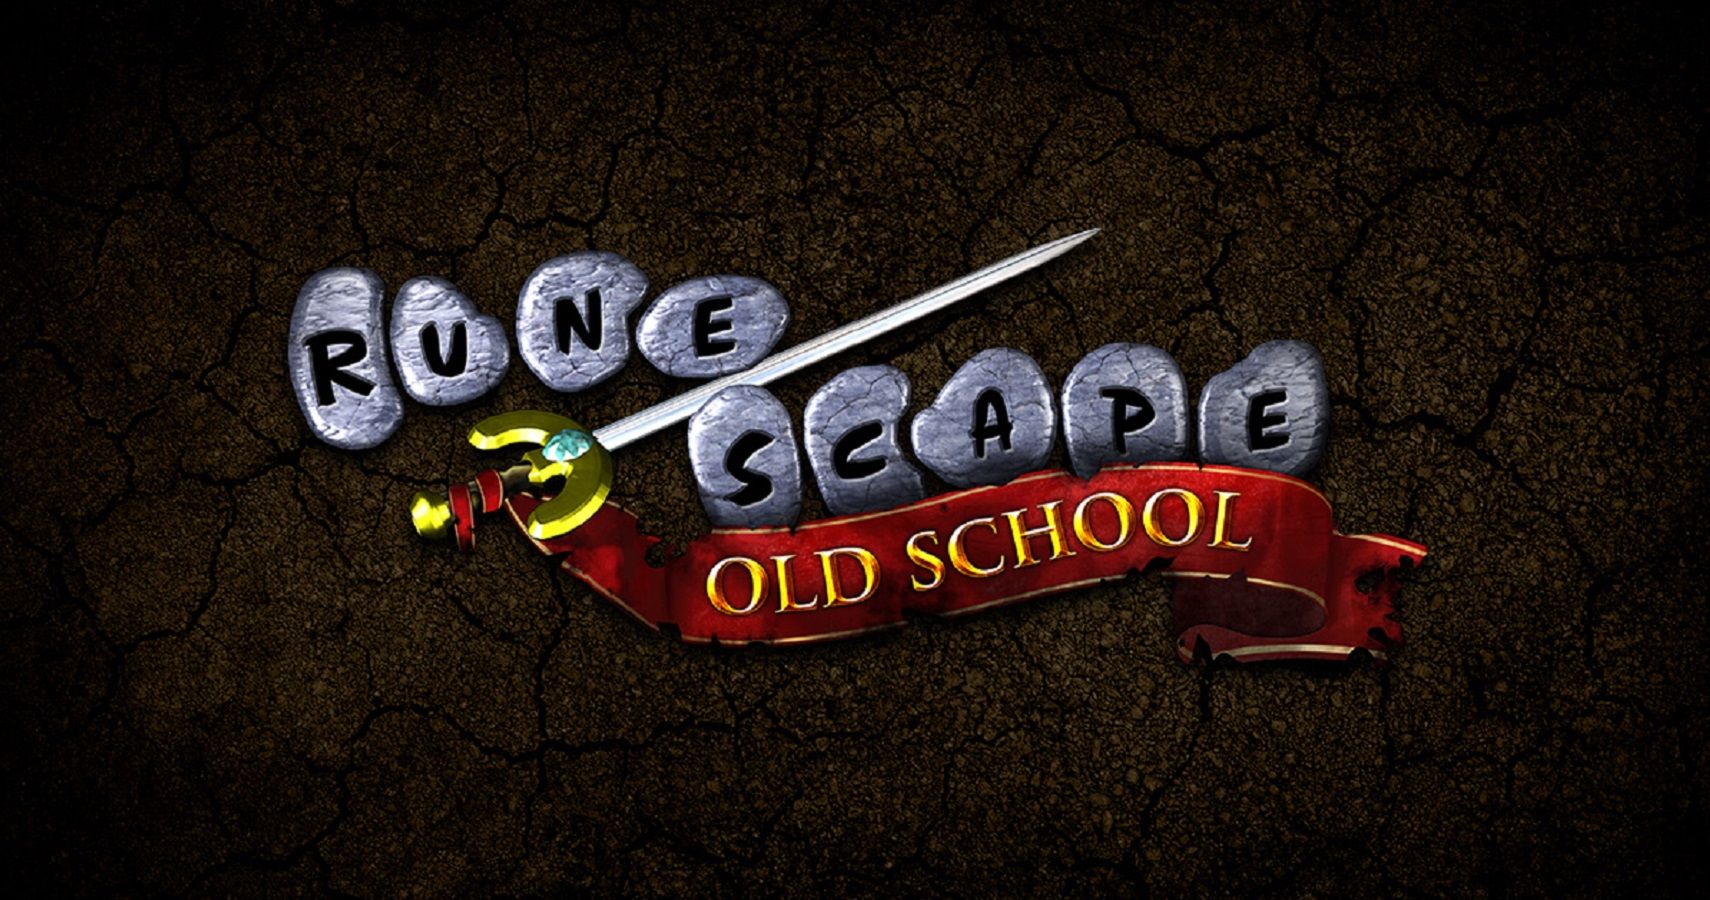 Old School RuneScape - IGN